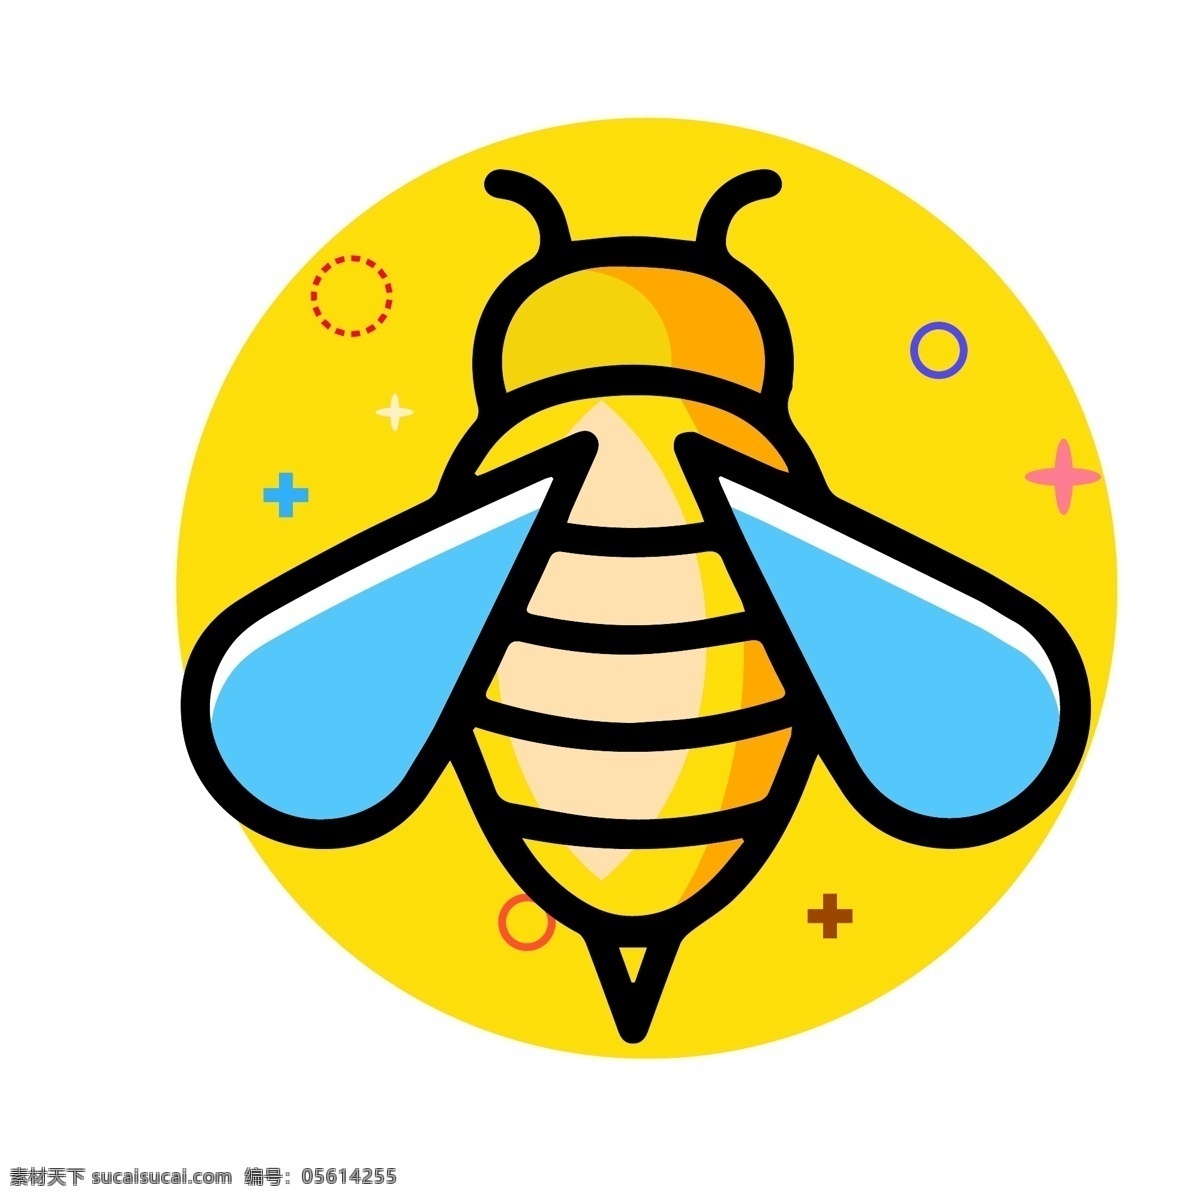 mbe 卡通 昆虫 蜜蜂 虫子 矢量 图标 元素